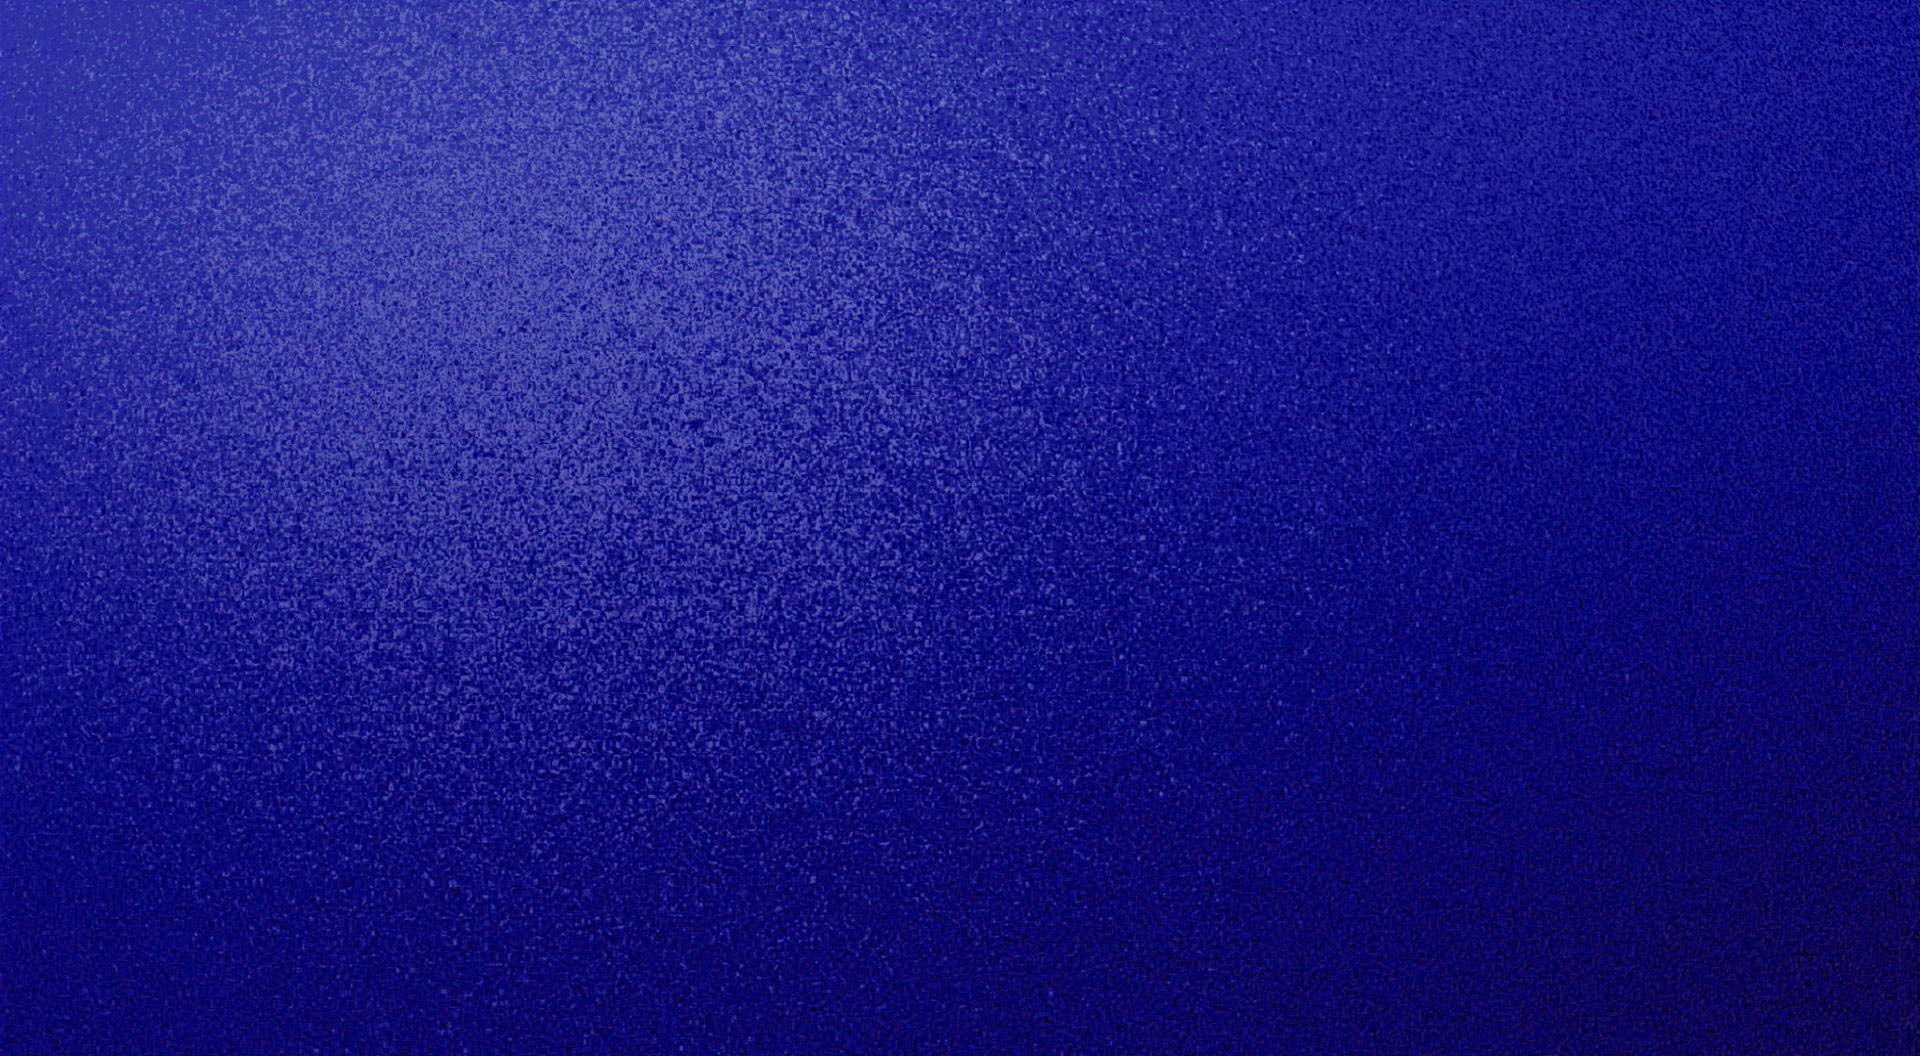 Dark Blue Background free download 